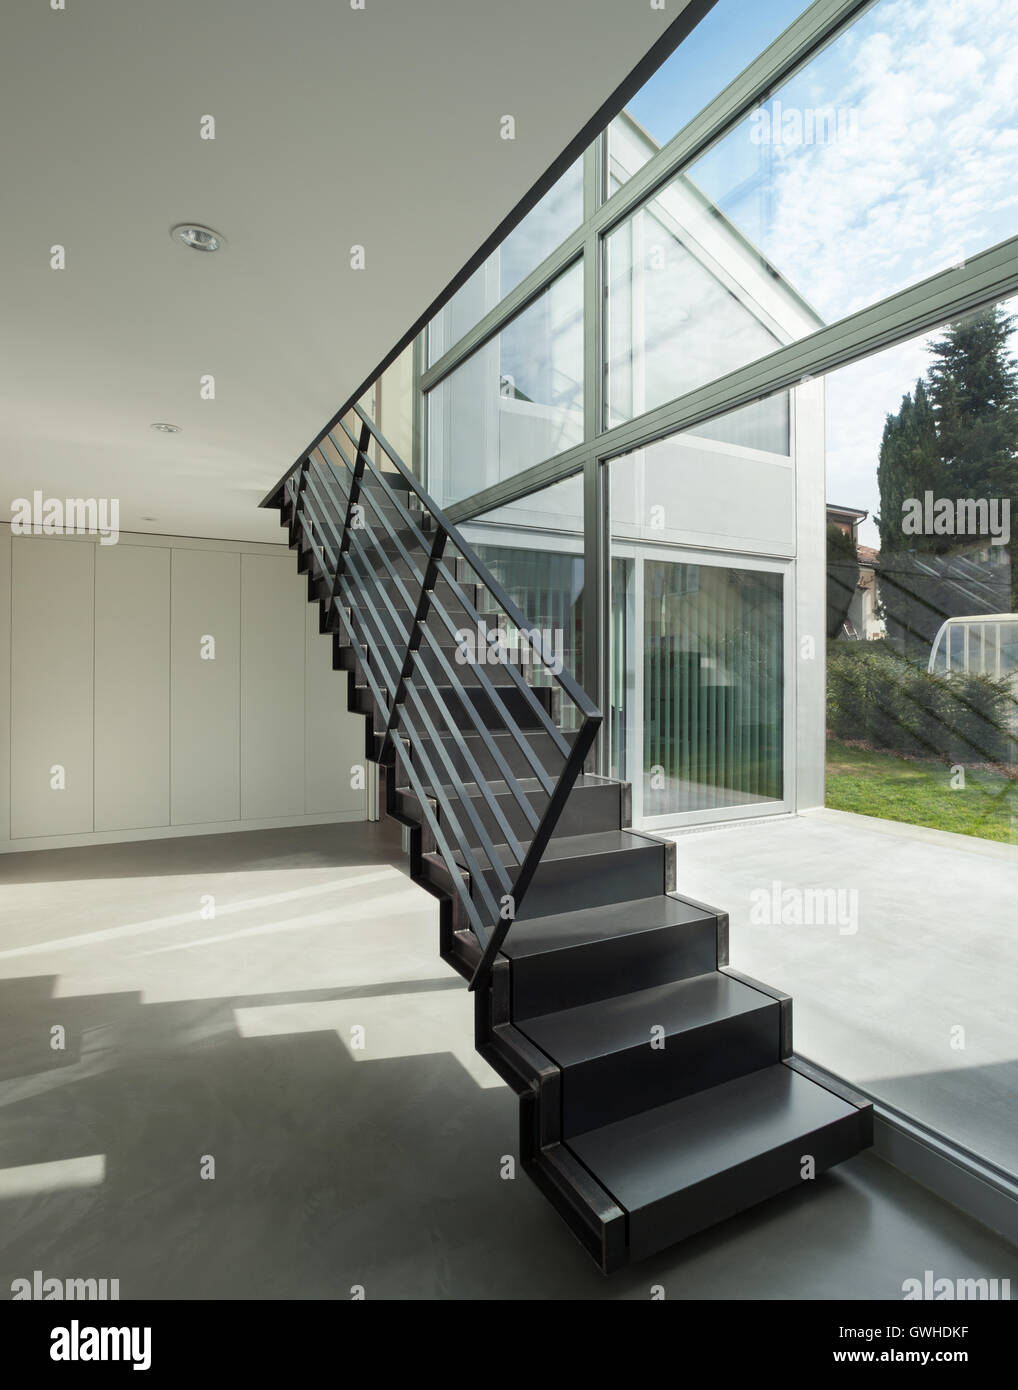 Escalera de Hierro, el interior de una casa moderna Fotografía de stock -  Alamy